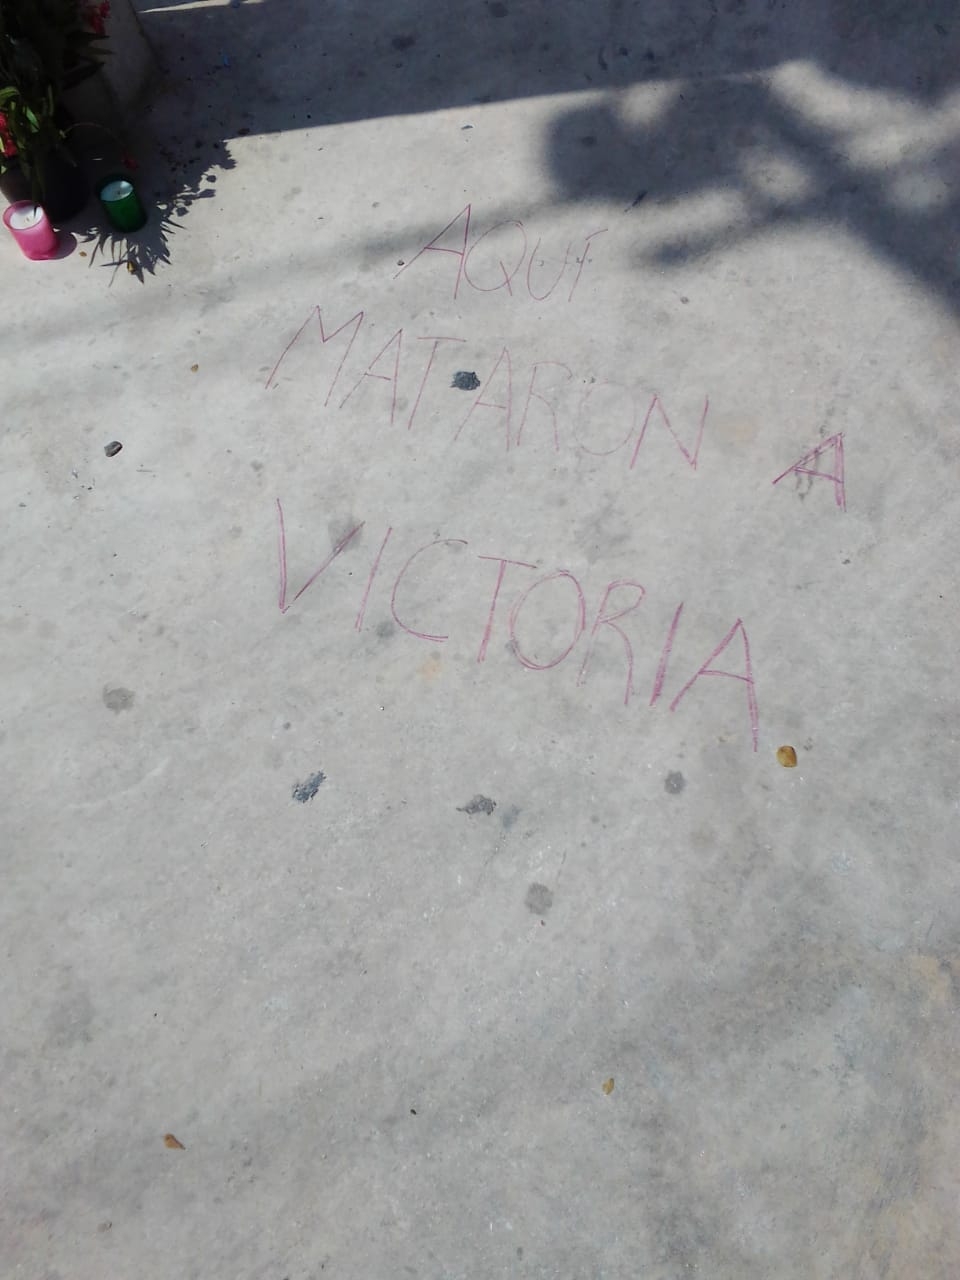 "Aquí murió Victoria", es lo que se lee junto a una pequeña ofrenda floral